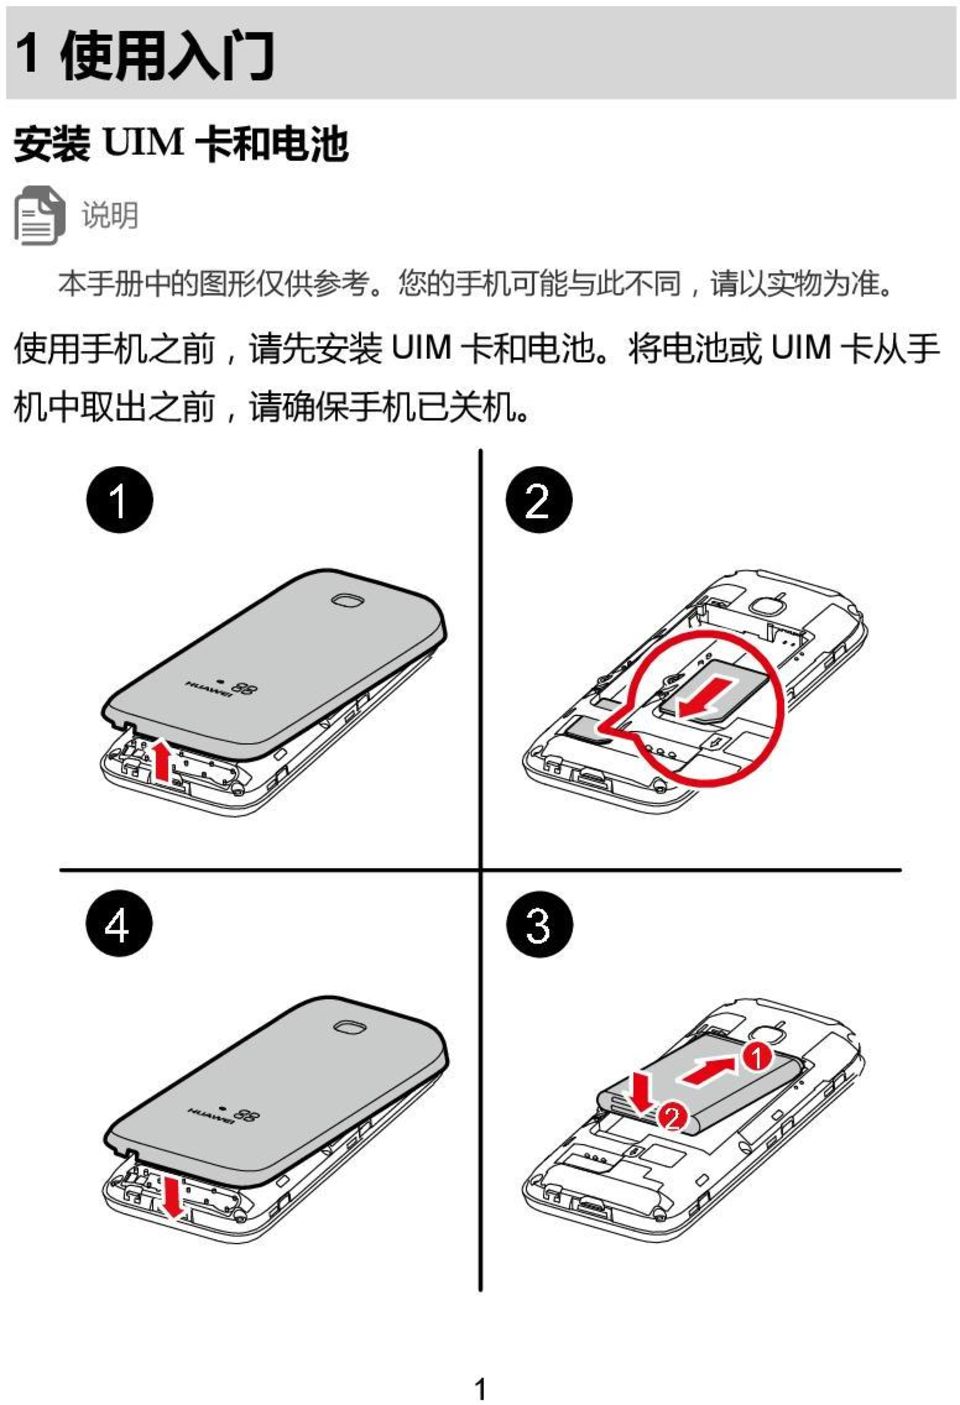 准 使 用 手 机 之 前, 请 先 安 装 UIM 卡 和 电 池 将 电 池